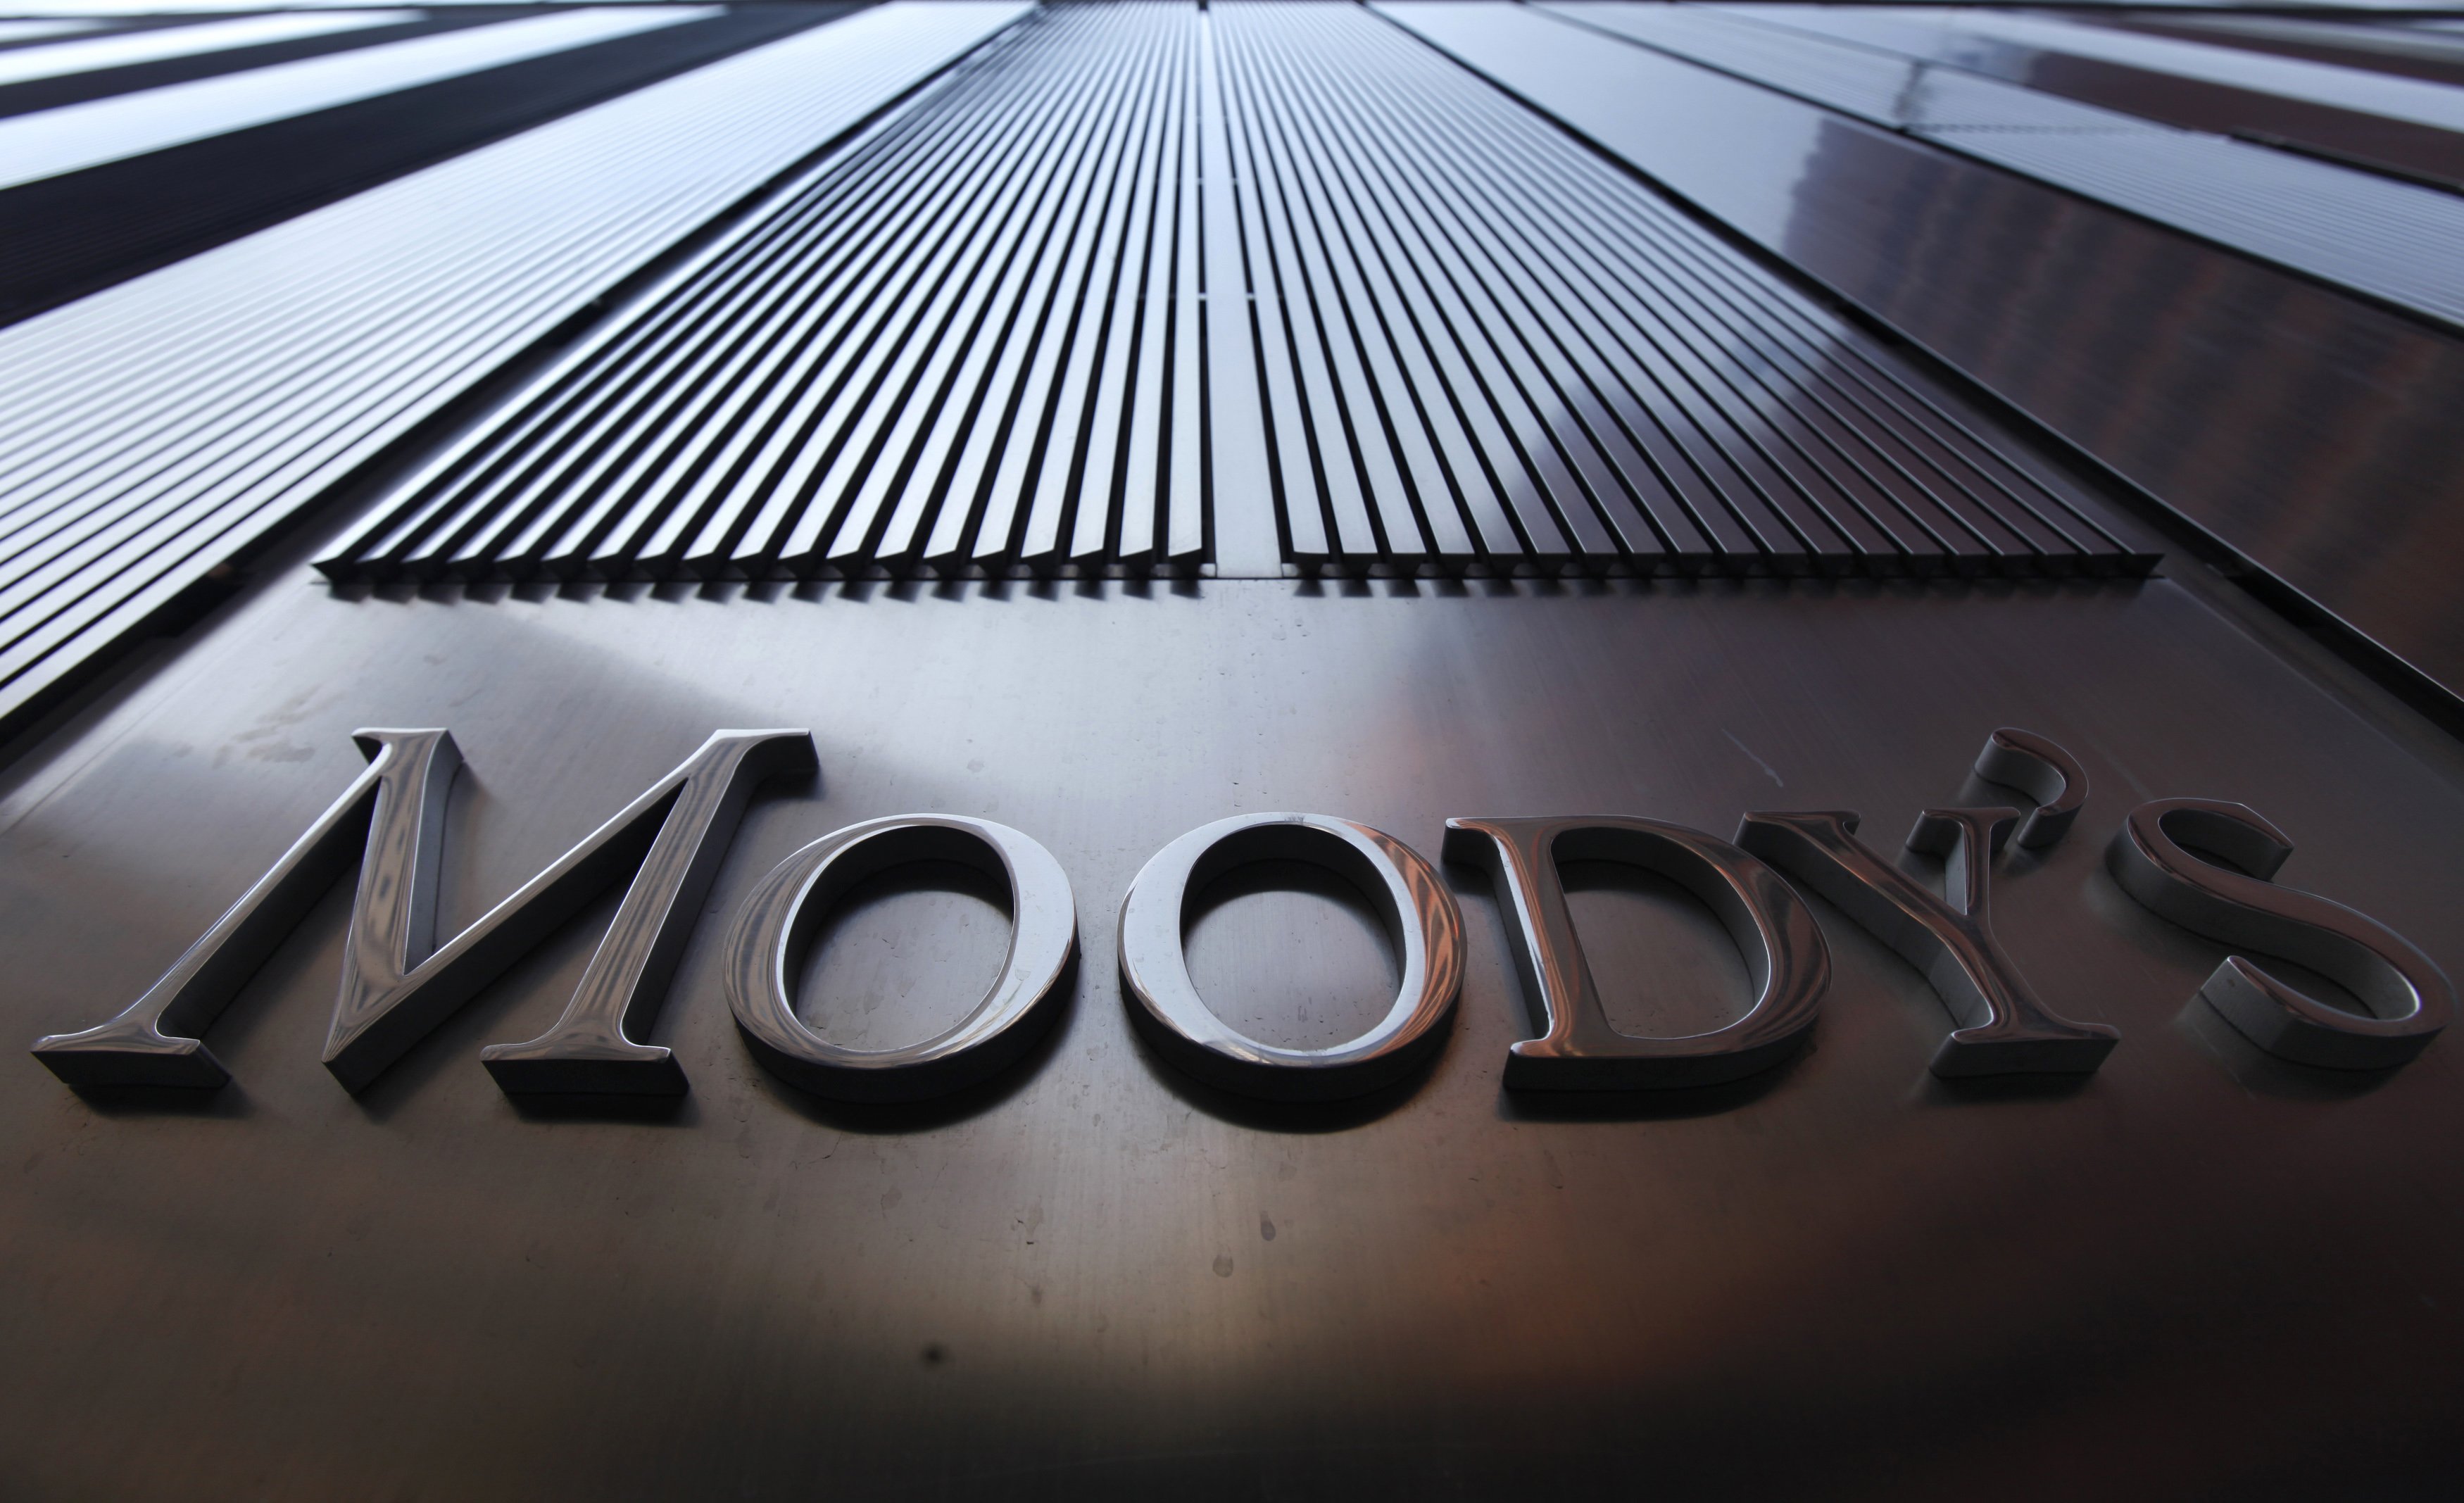 Σε πορεία σταθερής βελτίωσης η Ισπανία, εκτιμά ο οίκος Moody’s